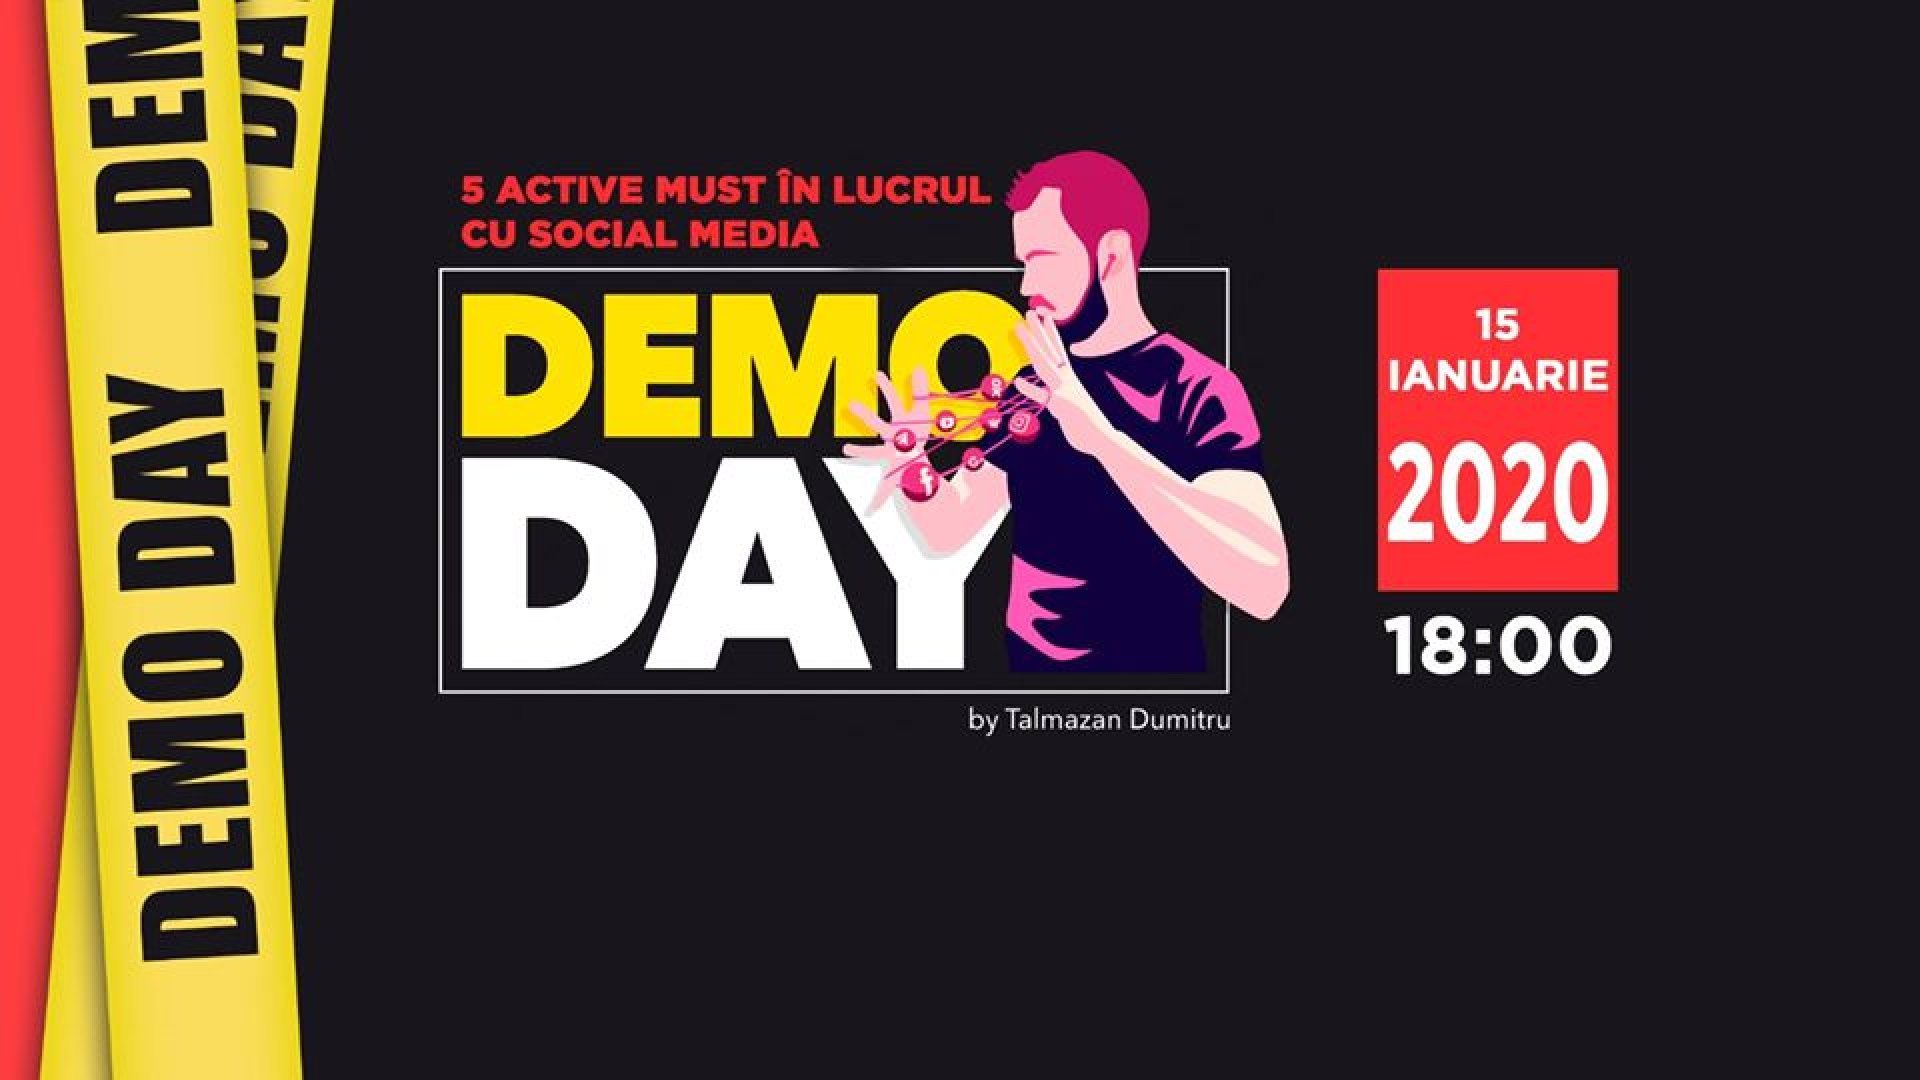 DemoDay - 5 active must în lucrul cu Social Media în 2020